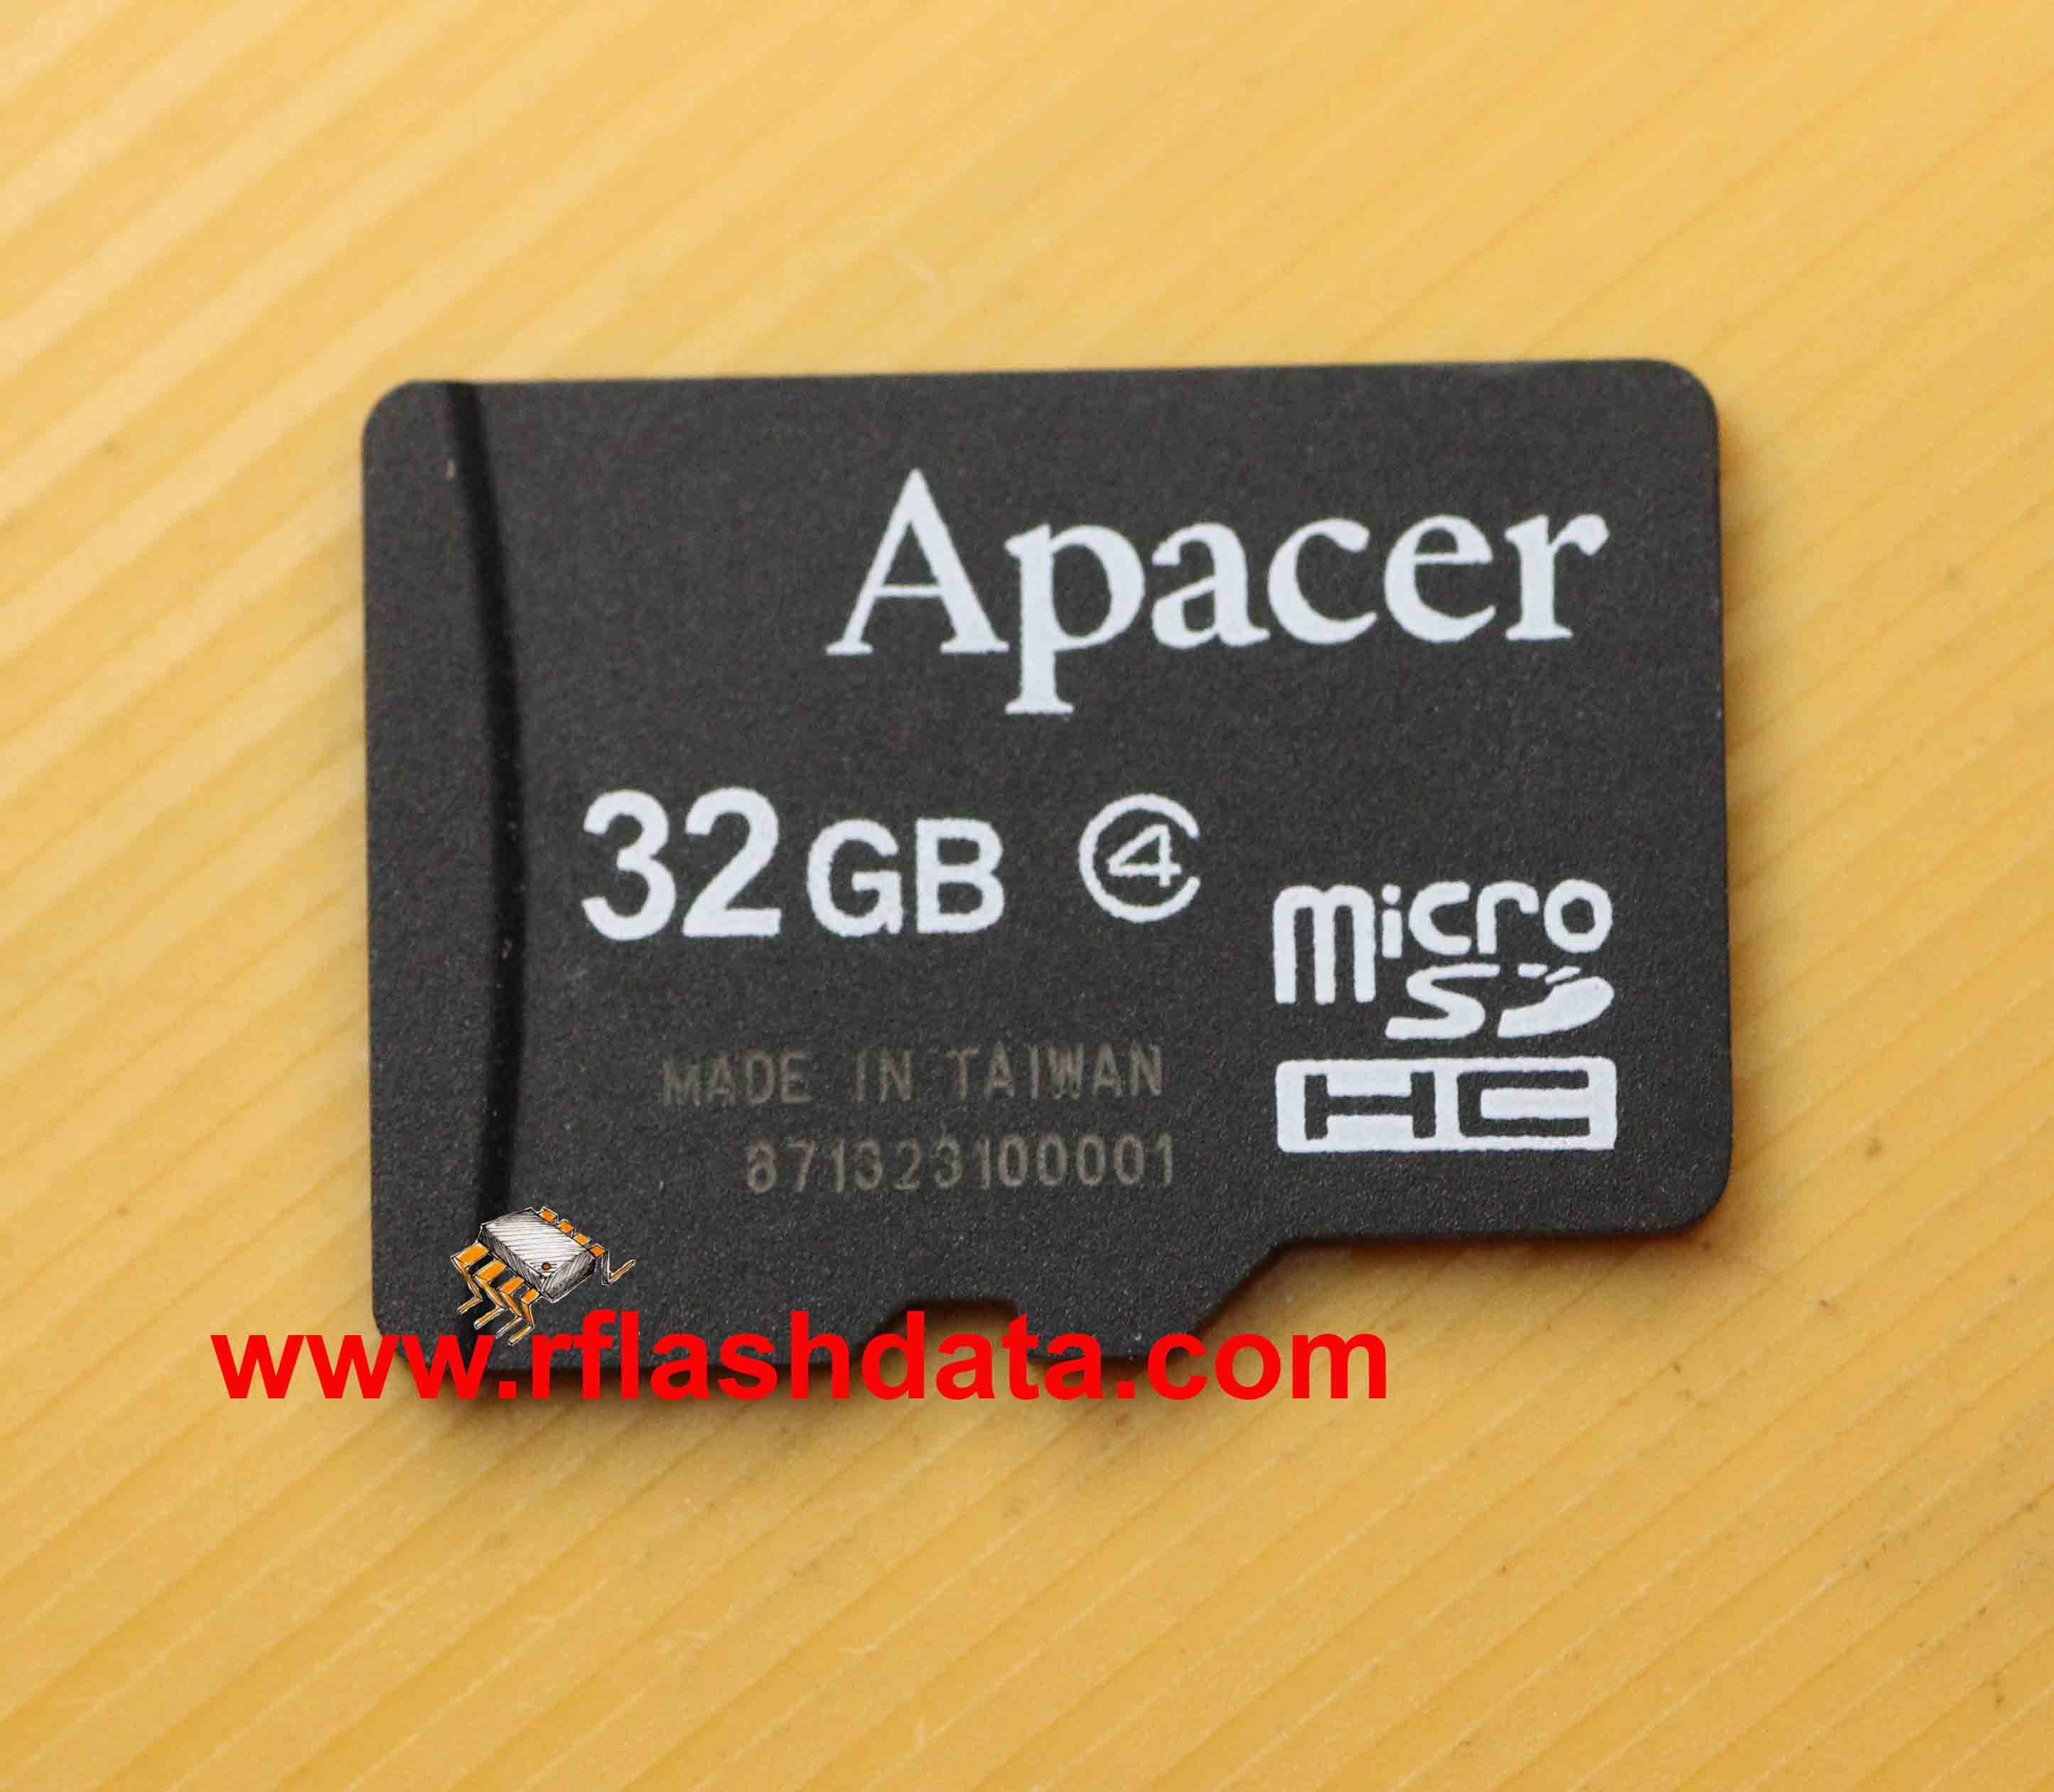 apacer memory card